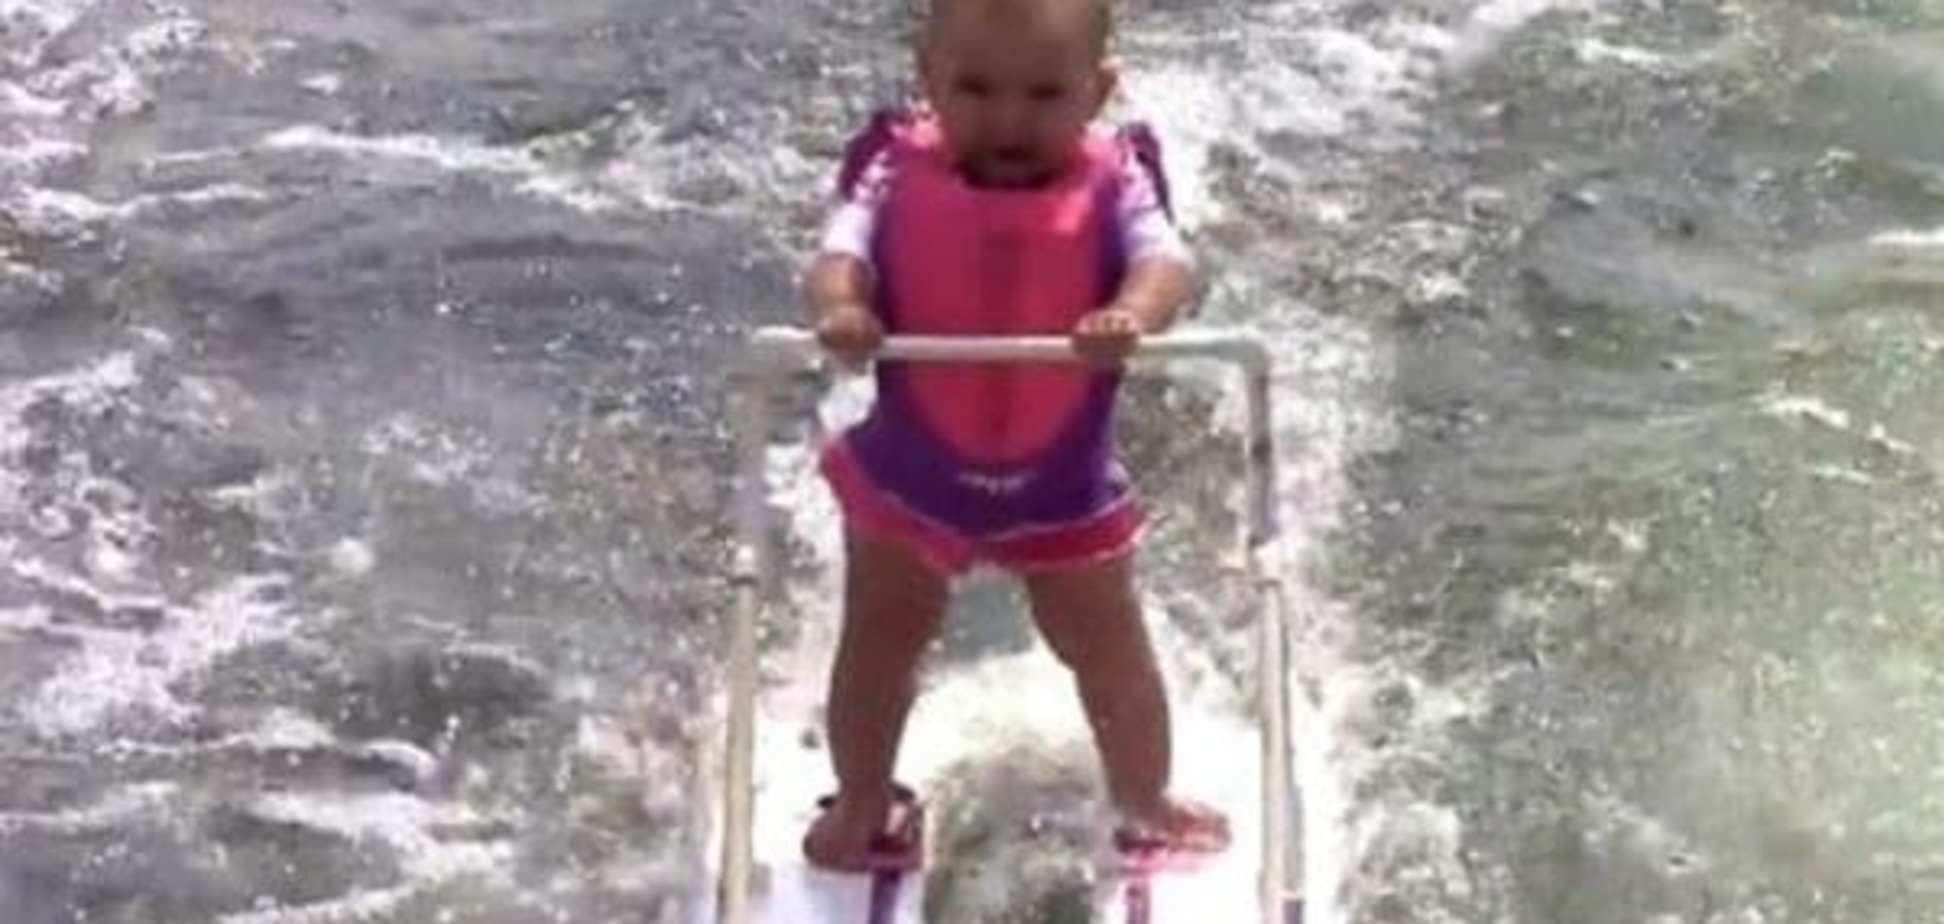 Шестимесячная девочка установила мировой рекорд на водных лыжах (видео)